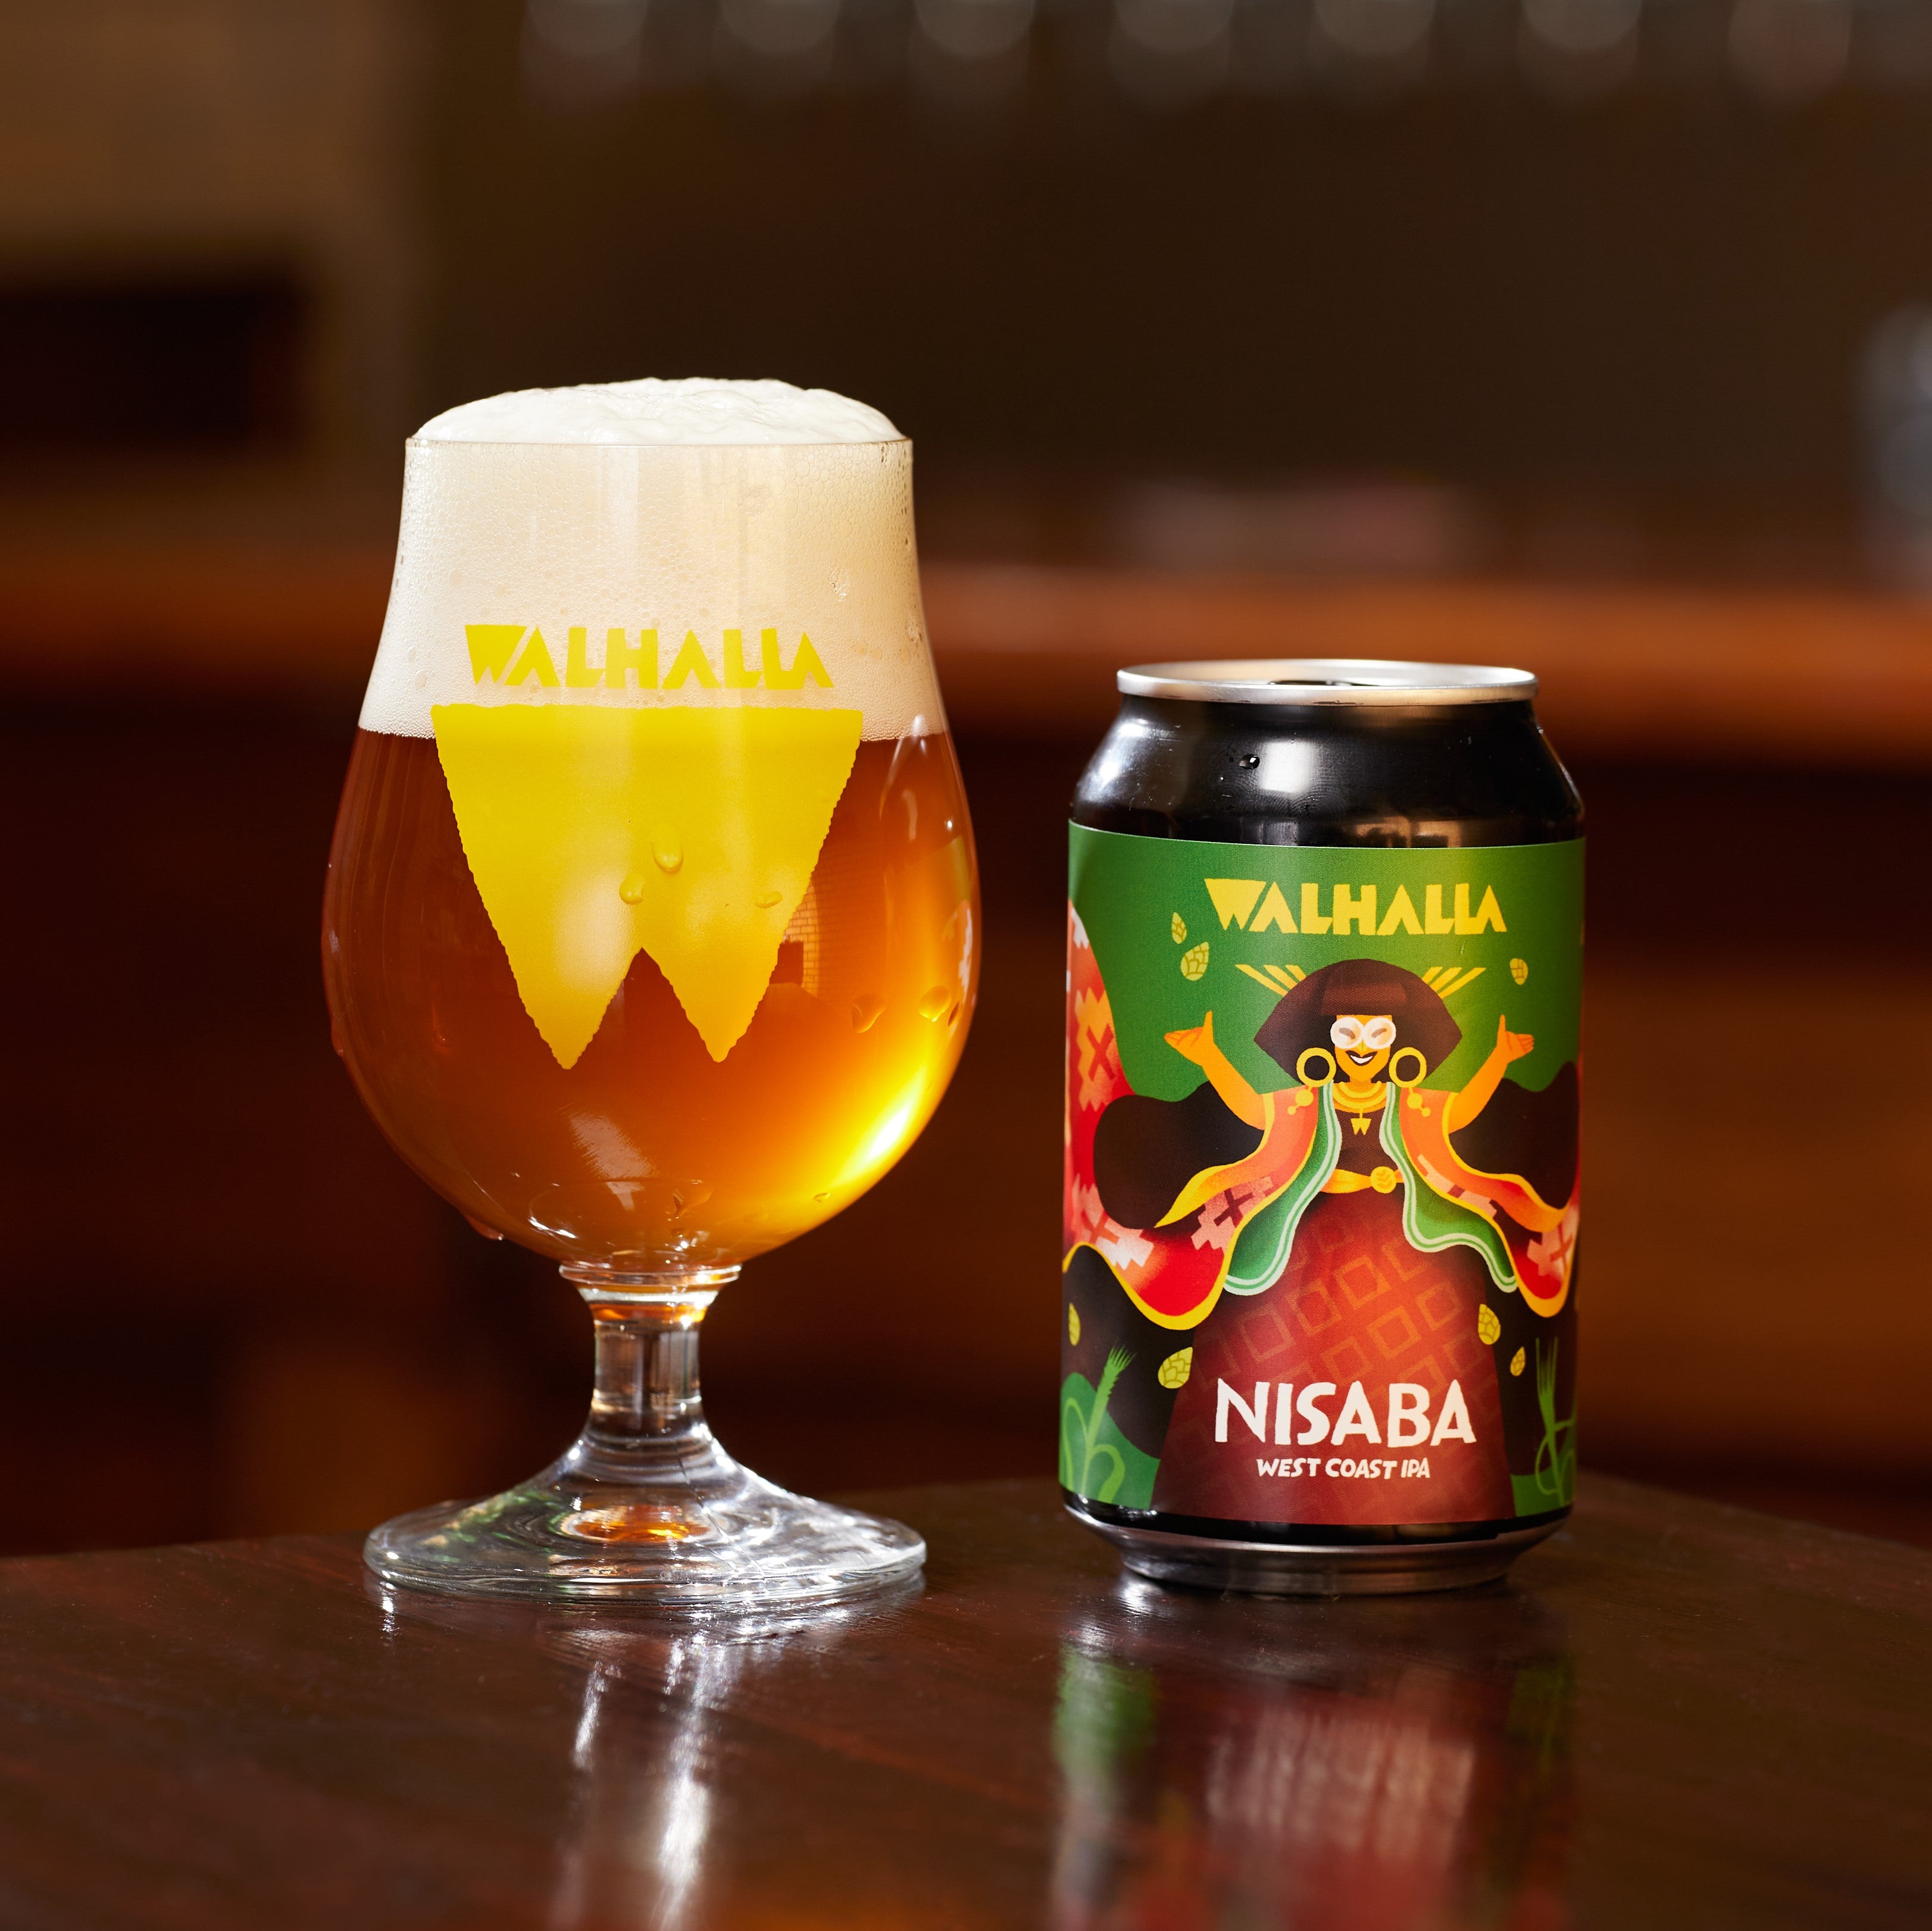 NISABA West Coast IPA - Wij zijn Walhalla, de Amsterdamse microbrouwerij die de lievelingsbieren van de goden brouwt.